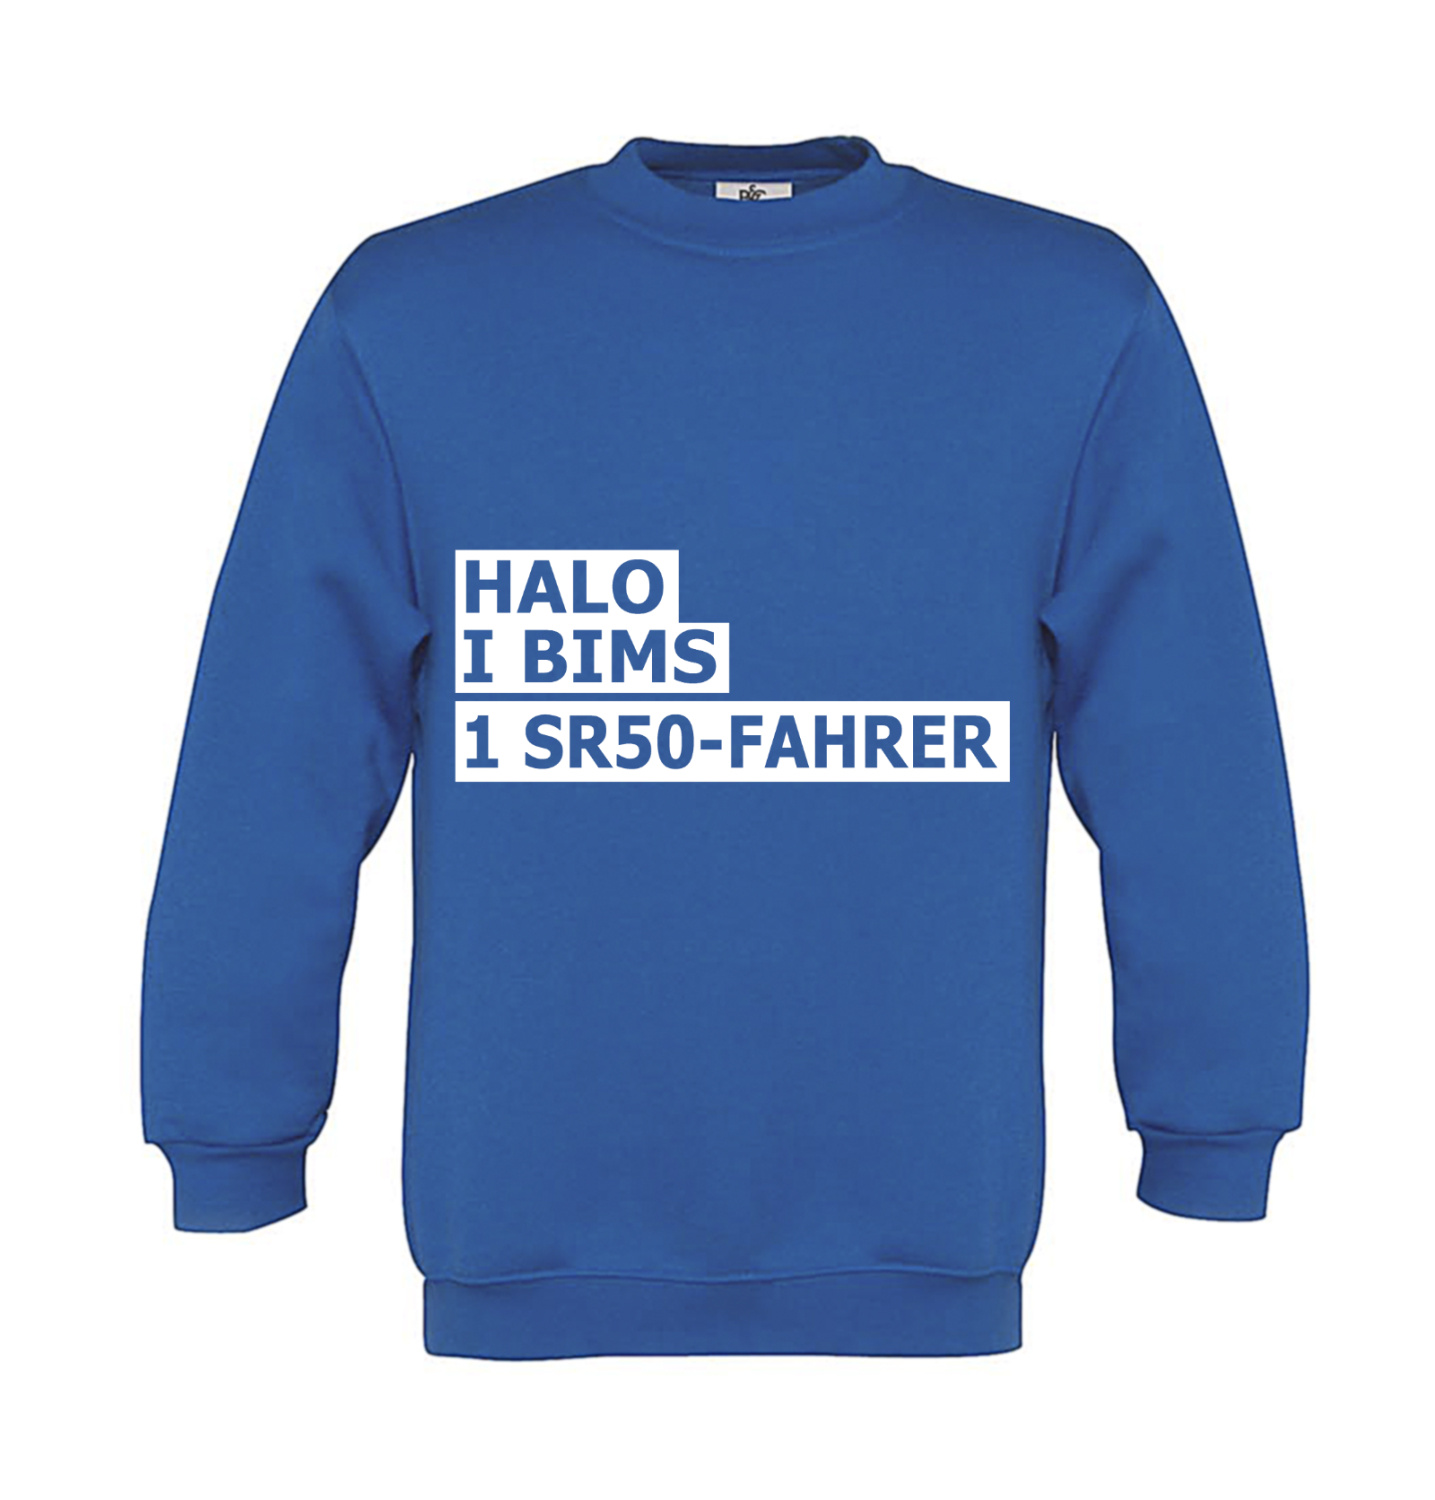 Sweatshirt Kinder 2Takter - Halo I bims 1 SR50-Fahrer